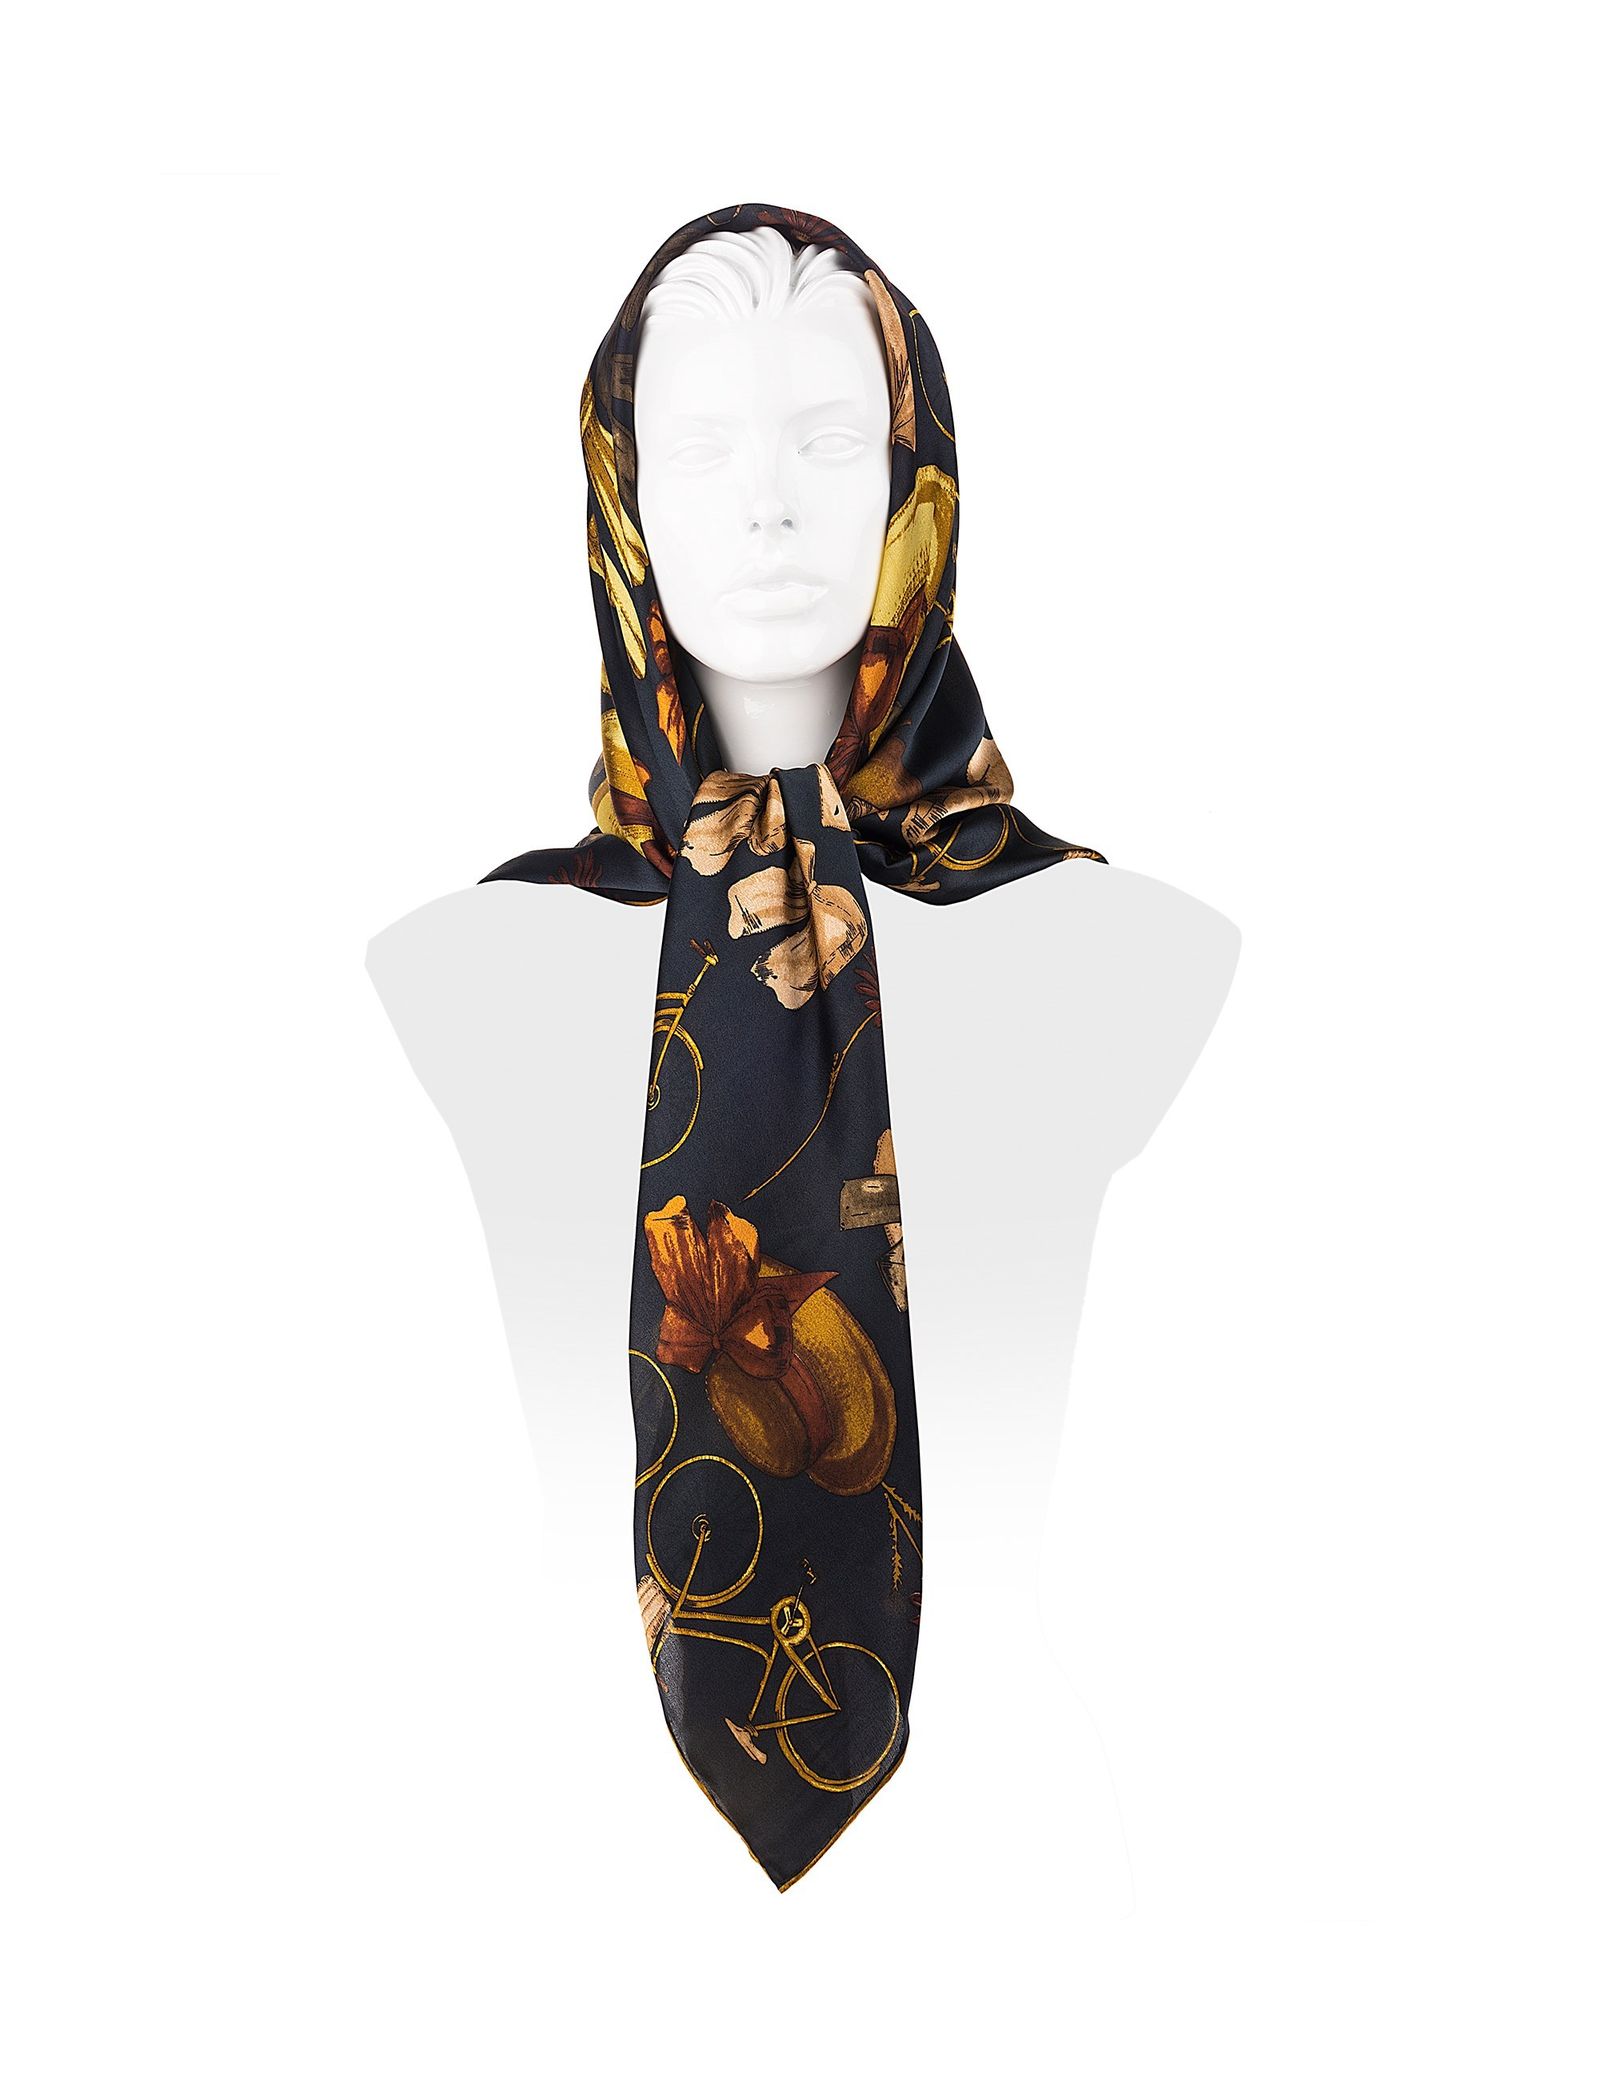 روسری ابریشمی زنانه - رزتی - زغالي - 1